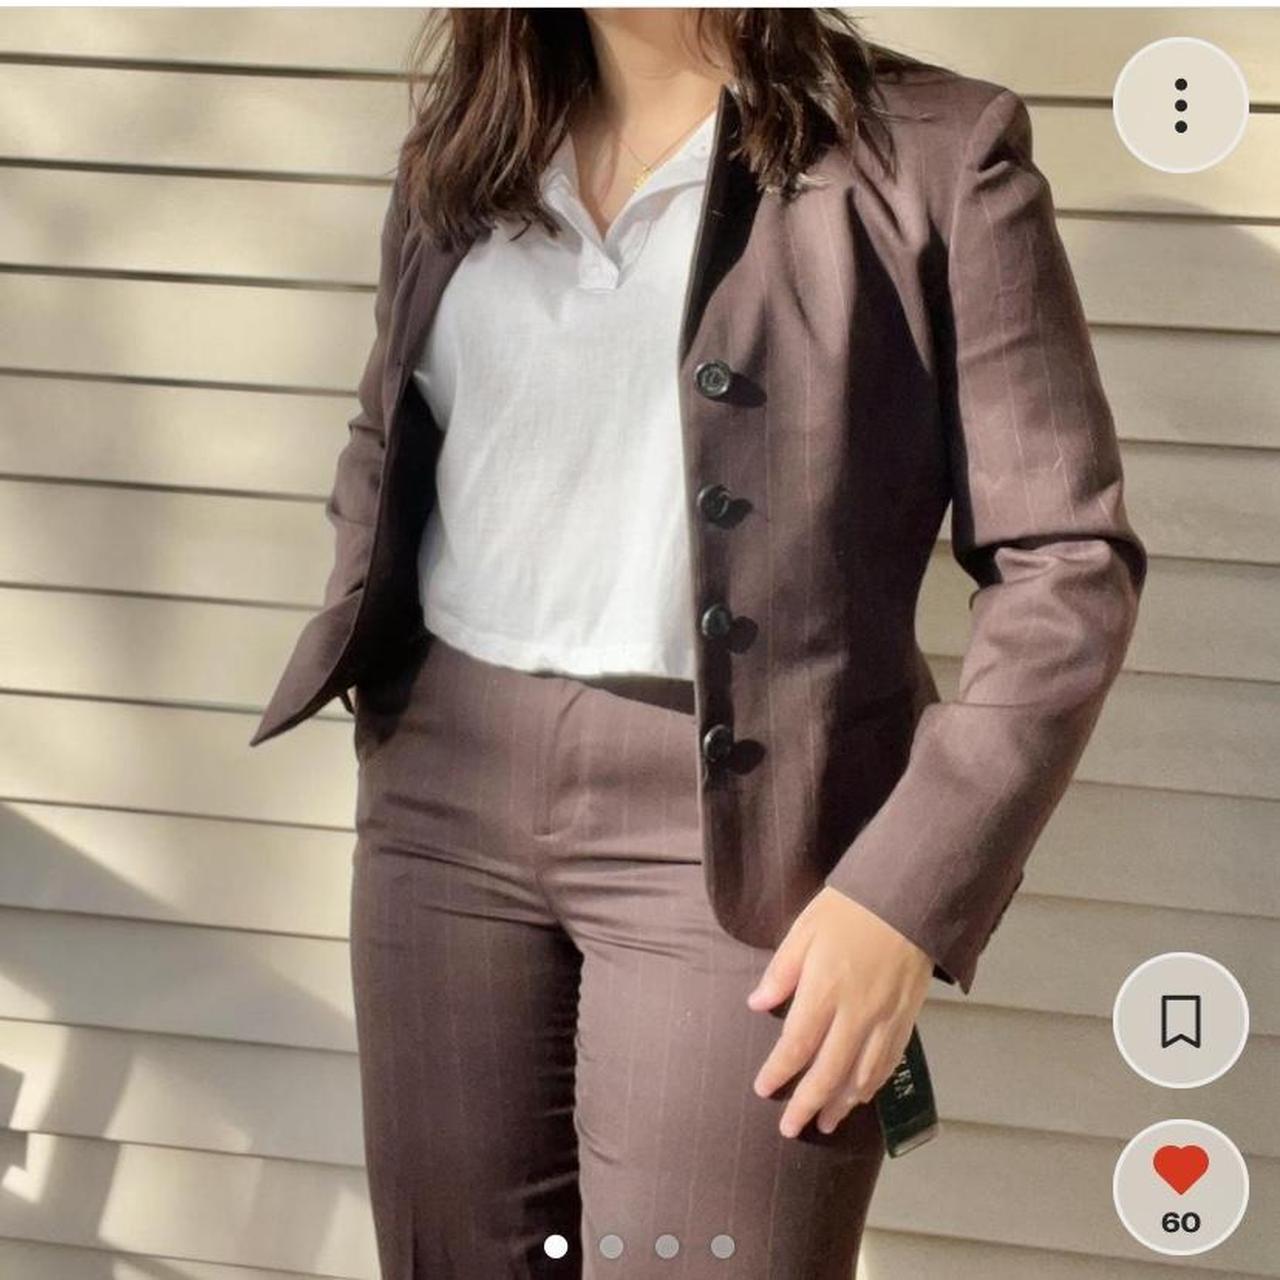 ralph lauren women's business suits